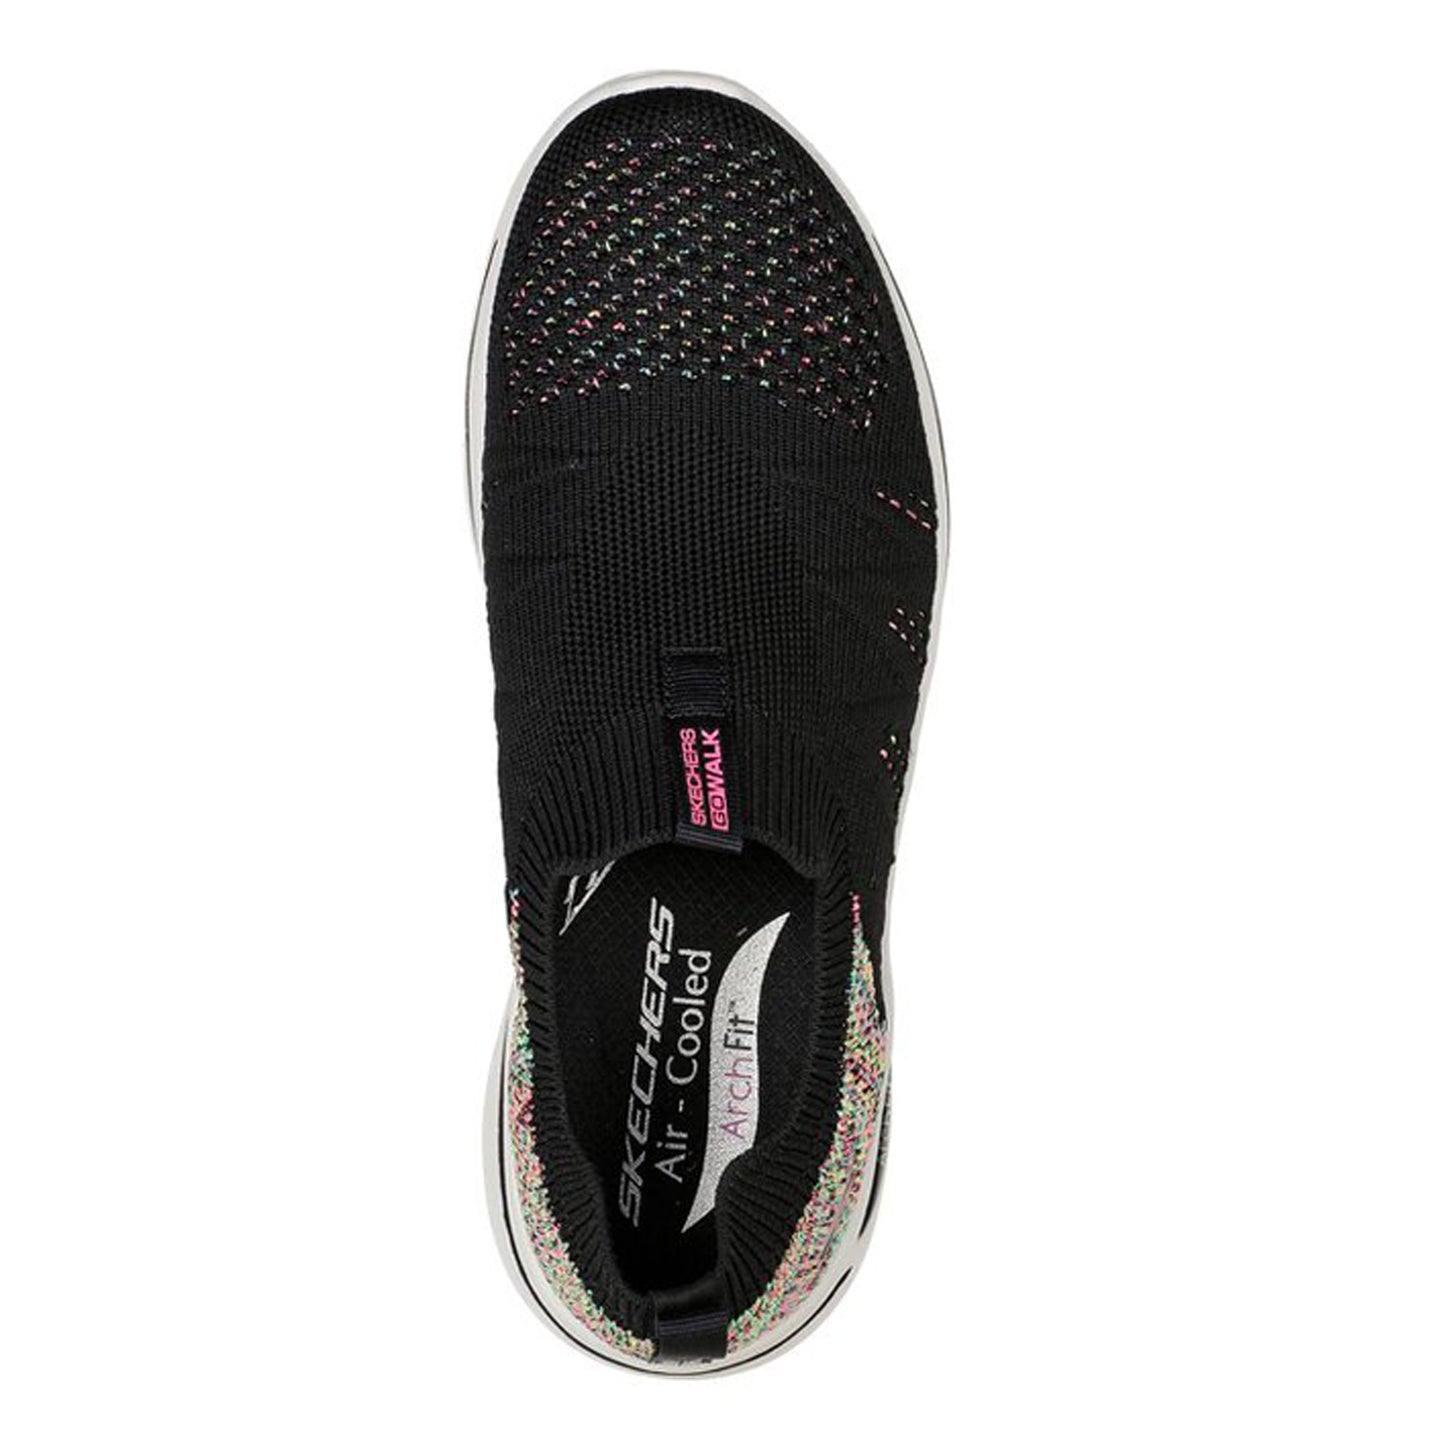 Peltz Shoes  Women's Skechers GOwalk Arch Fit - Fun Times Sneaker BLACK MULTI 124478-BKMT